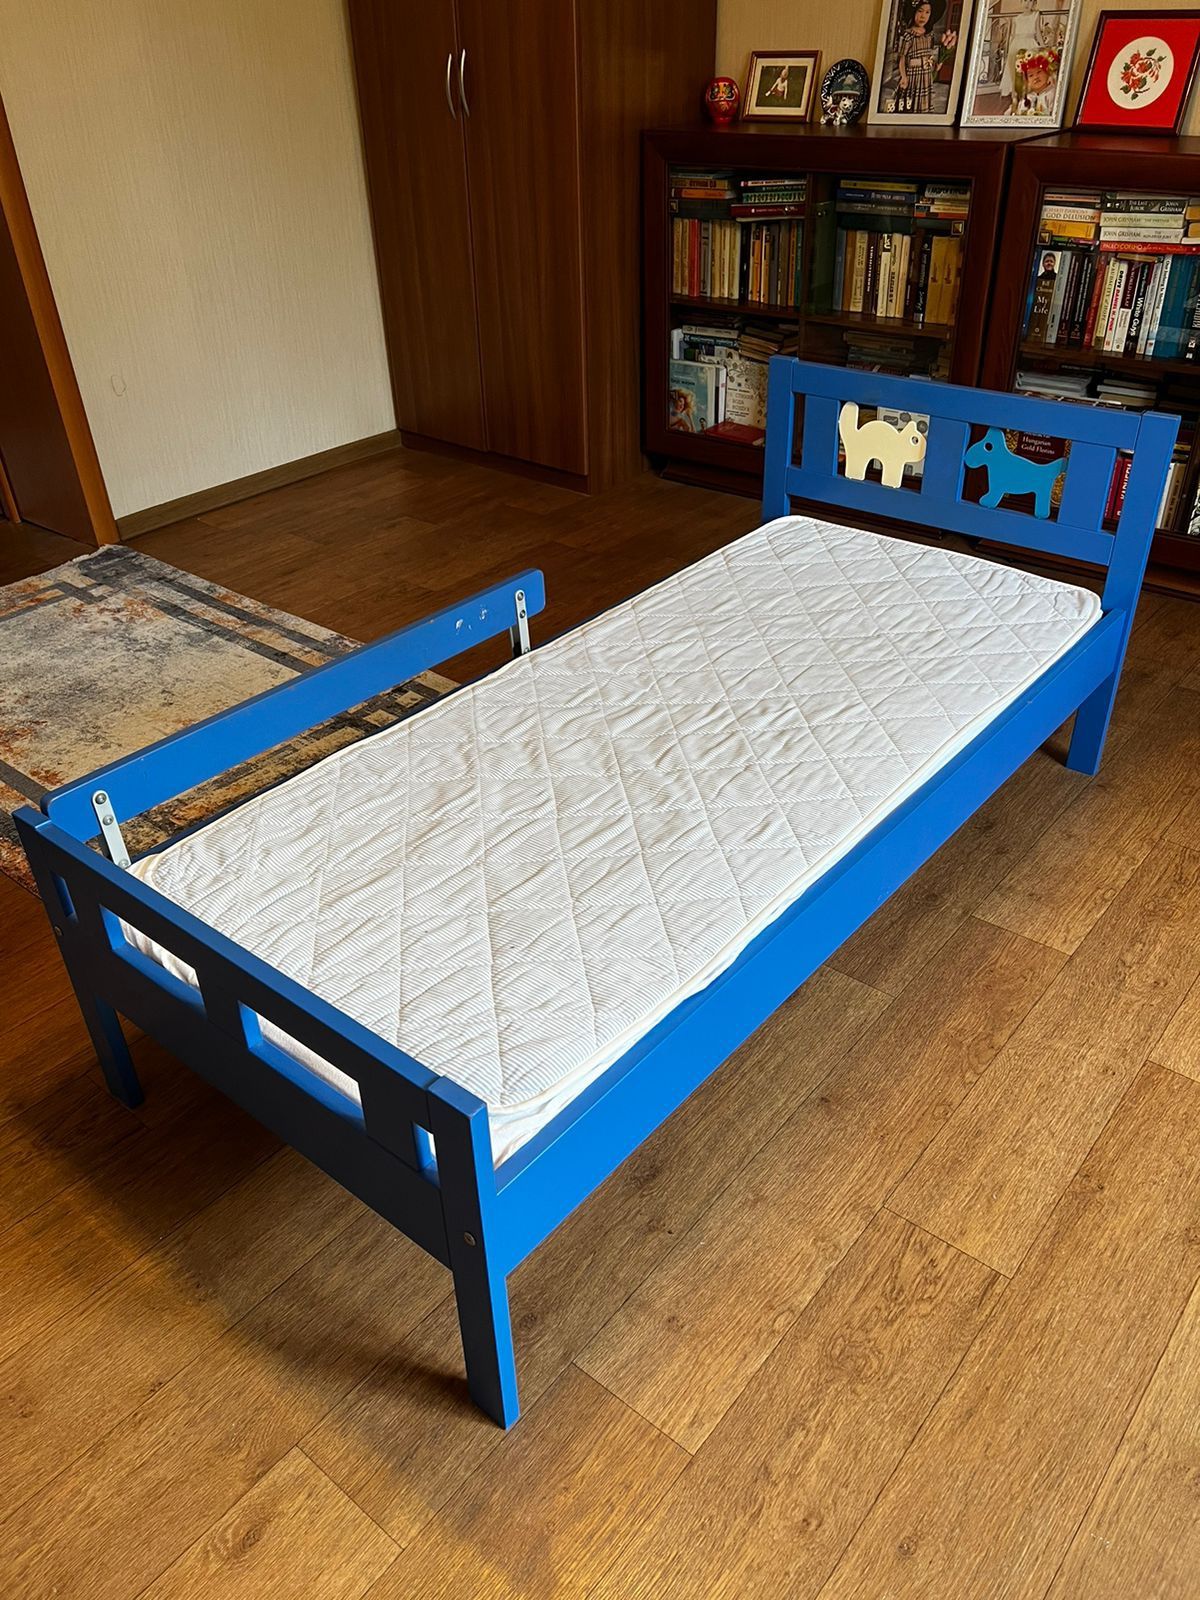 Продам кровать Ikea подростковую размер 165/ 78 c матрасом и накидкой